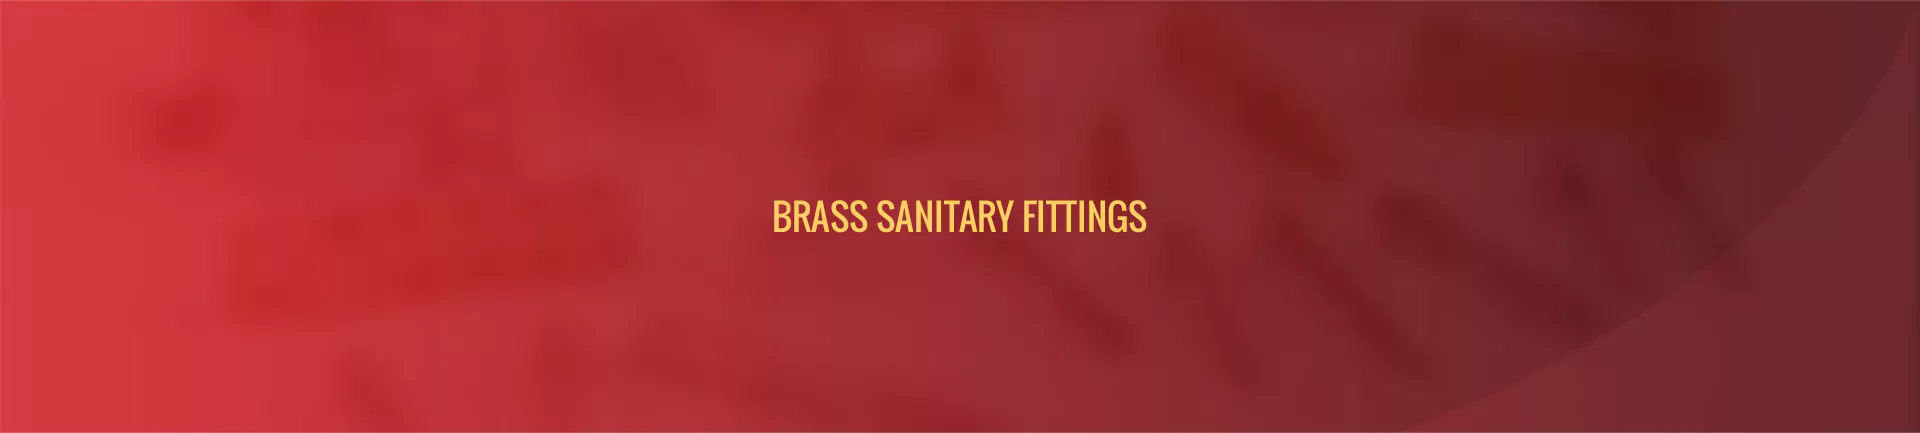 brass-sanitary-fittings-banner